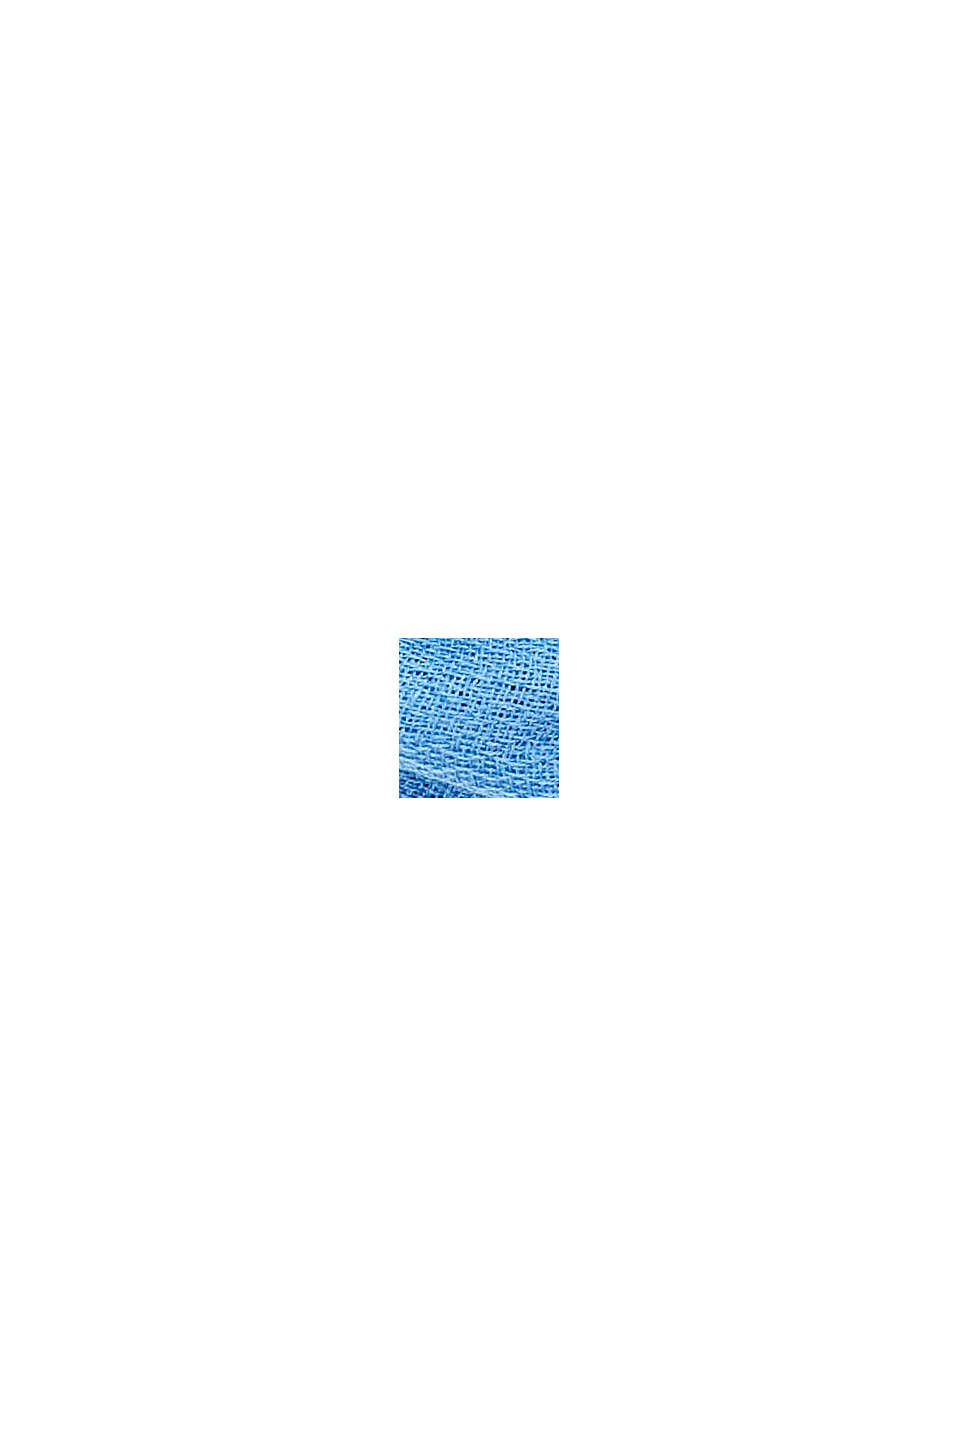 Z recyklovaného materiálu: jednobarevná tkaná šála kruhového tvaru, GREY BLUE, swatch